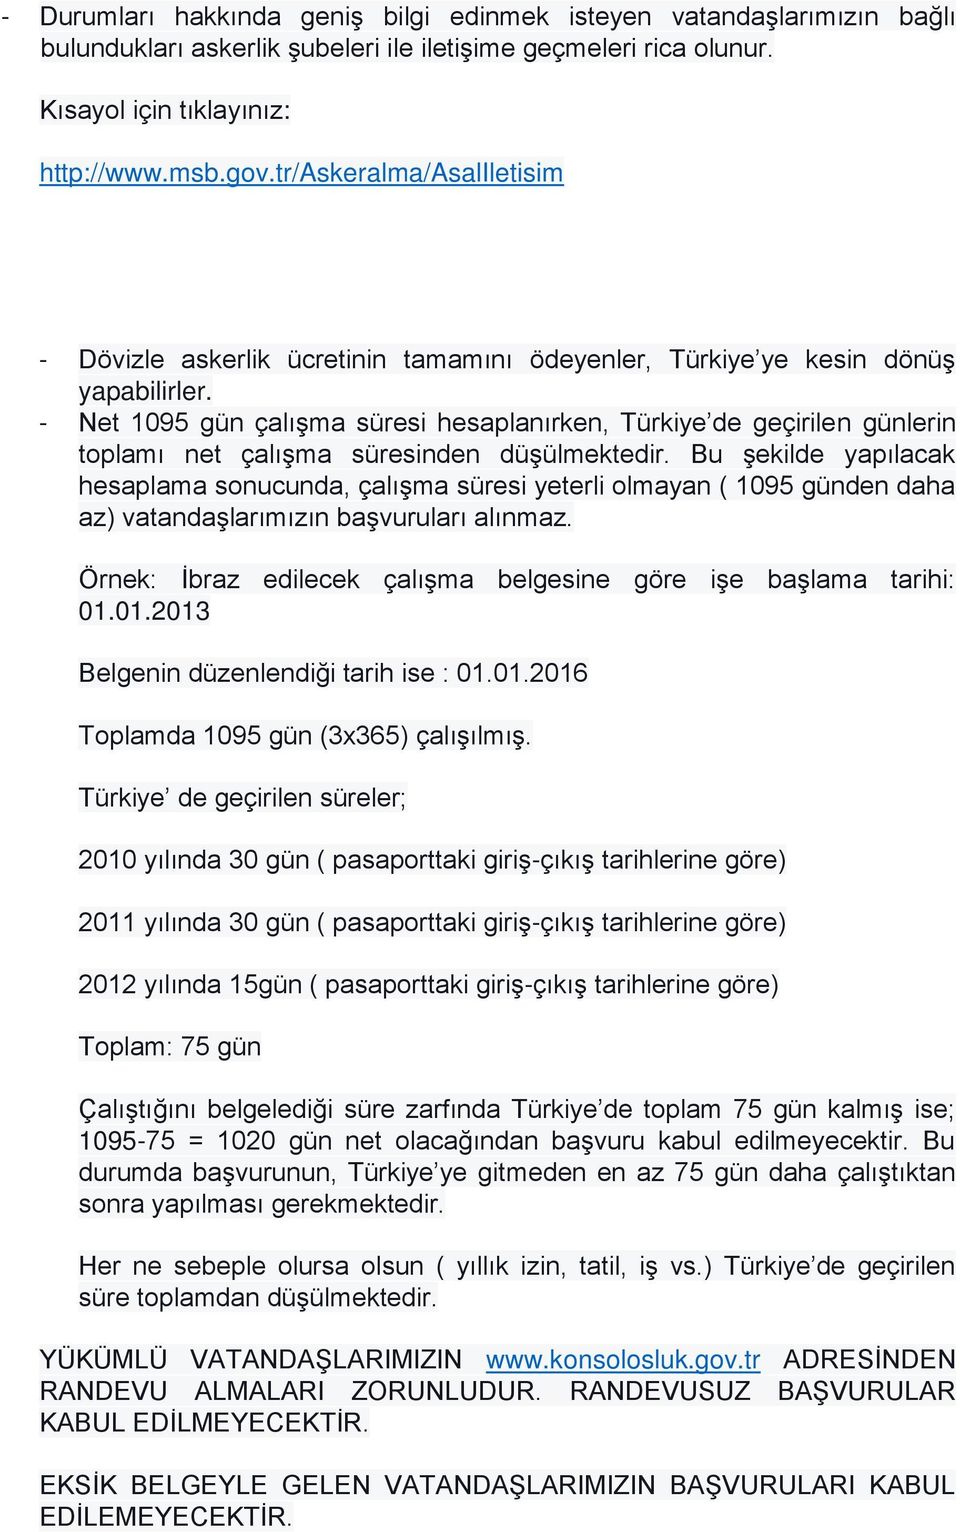 - Net 1095 gün çalışma süresi hesaplanırken, Türkiye de geçirilen günlerin toplamı net çalışma süresinden düşülmektedir.